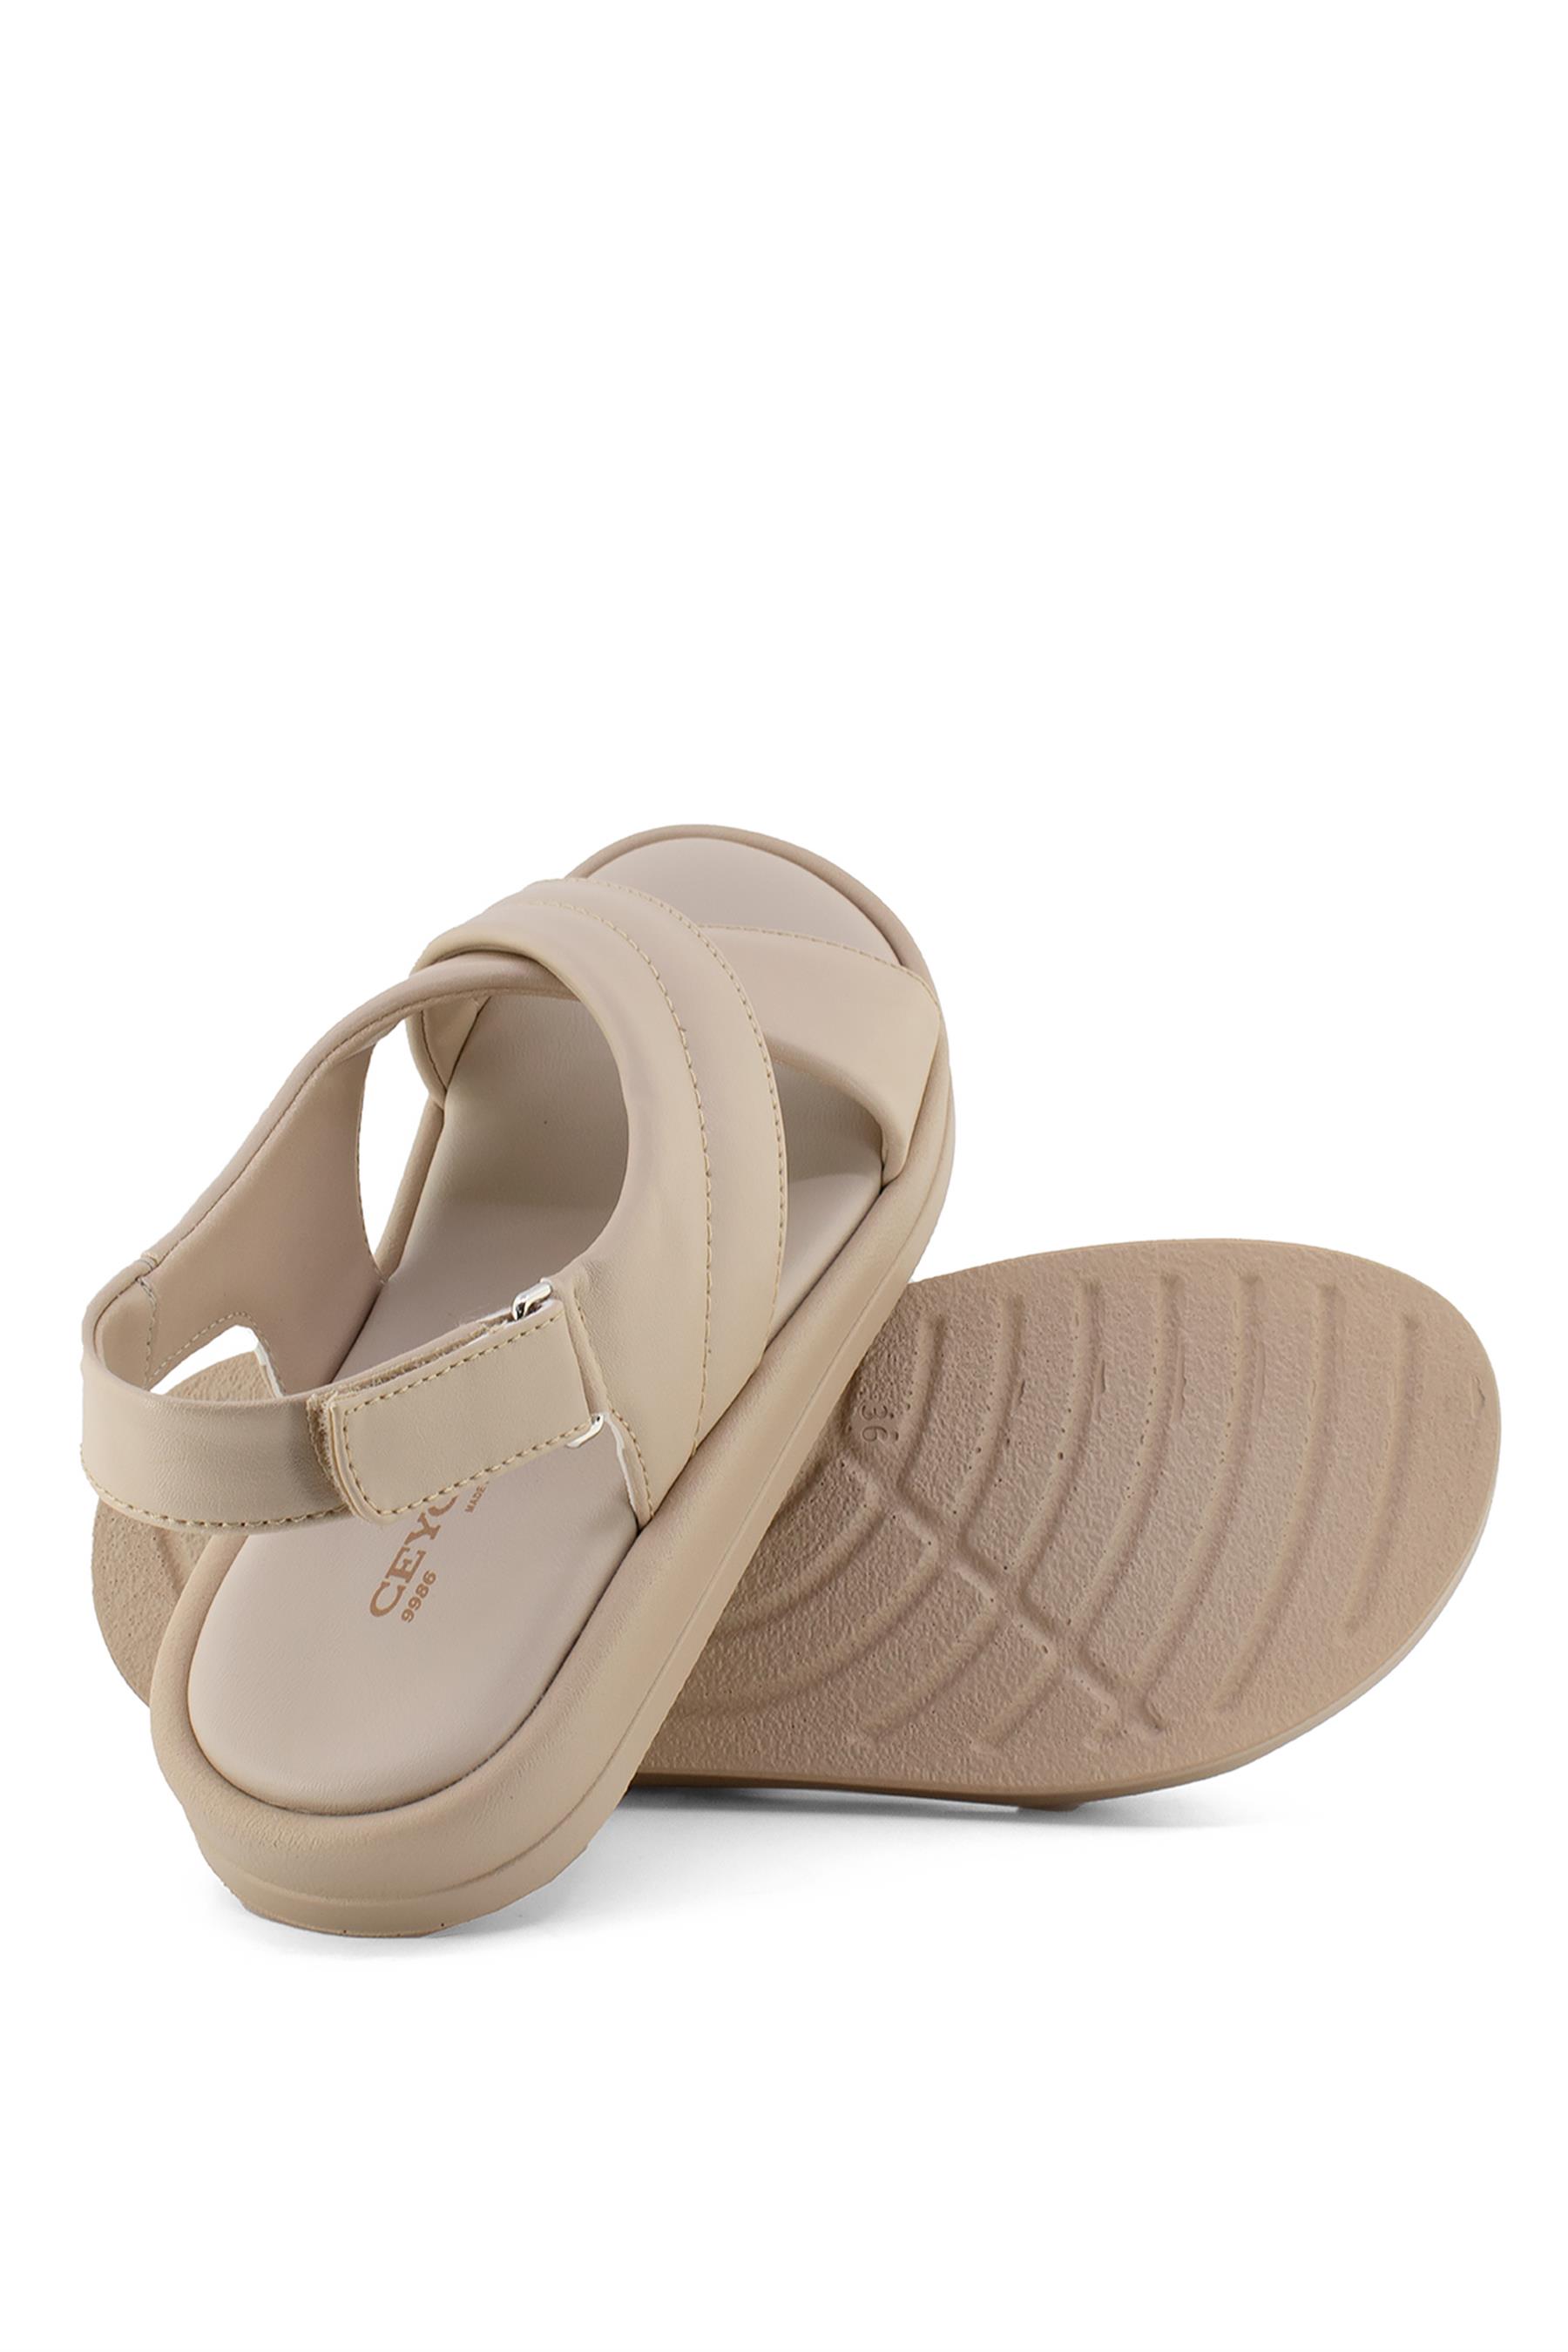 Ceyo 99863 Kadın Sandalet Bej - Ayakkabı Fuarı Elit